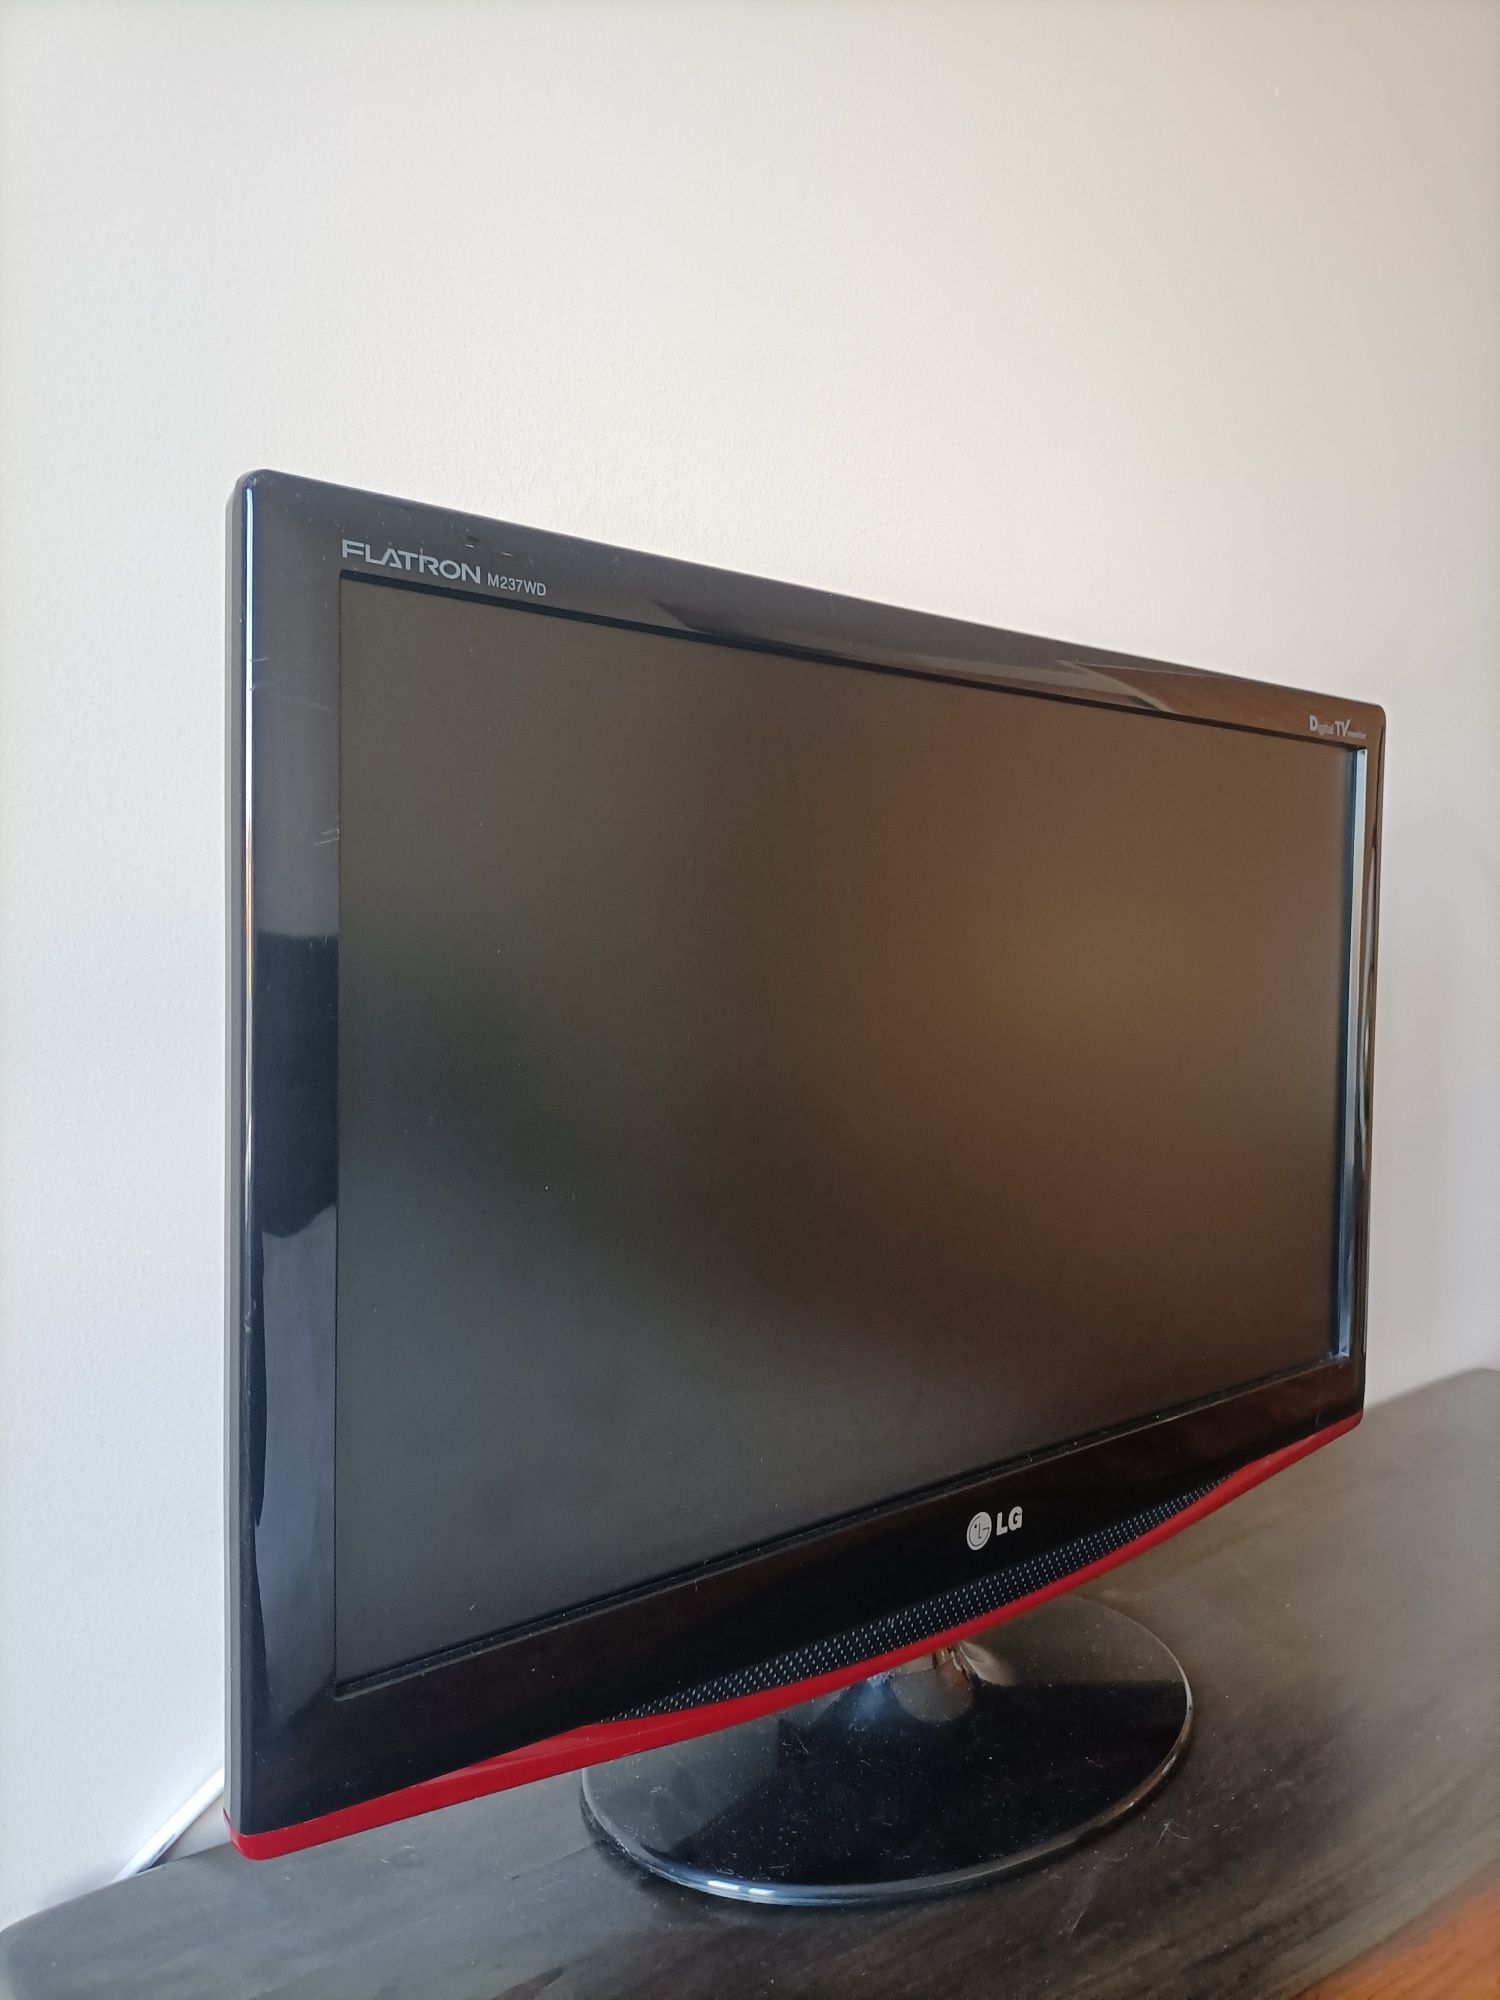 LG M237WD tv/monitor c/ comando